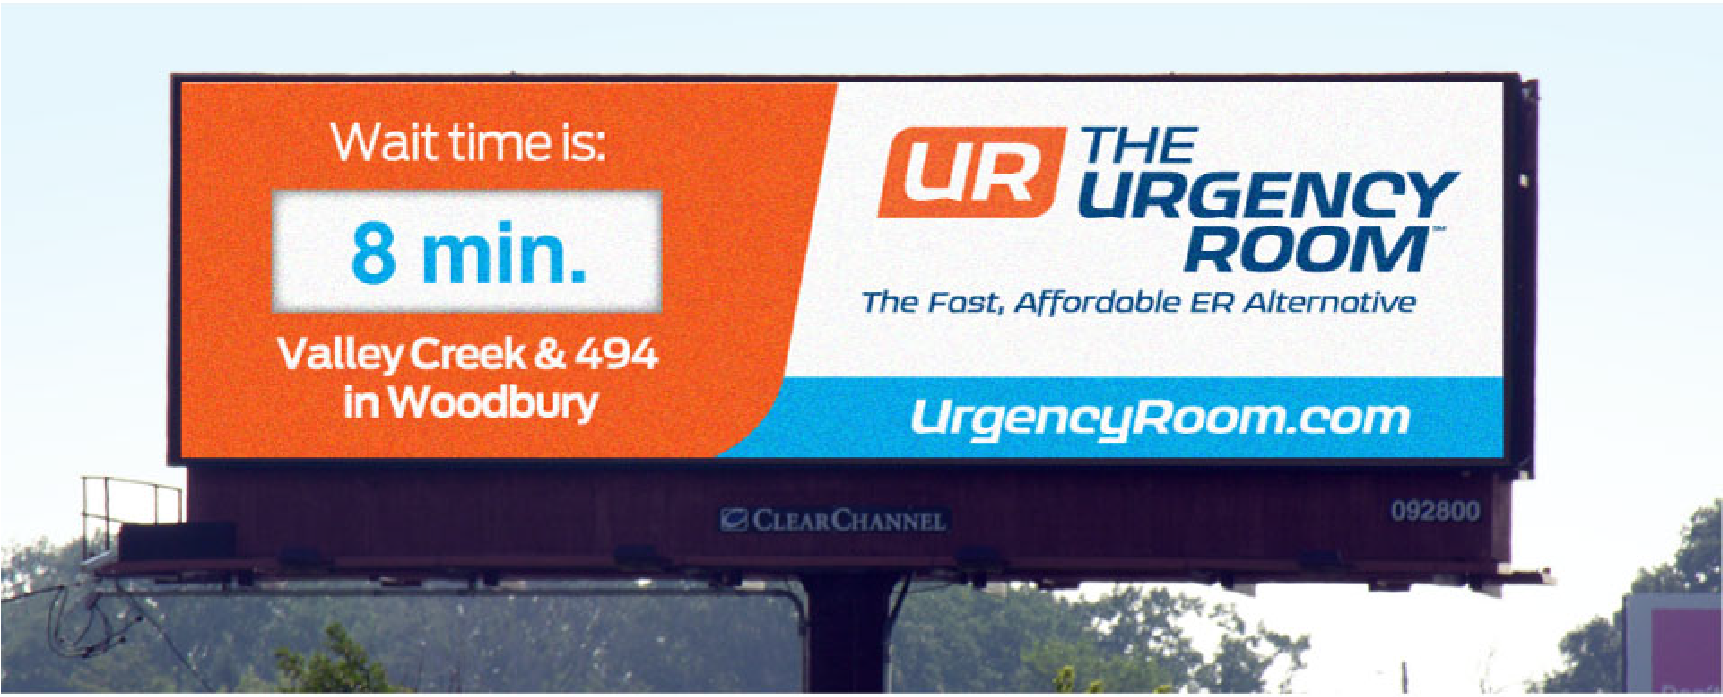 UrgencyRoom_Billboard2